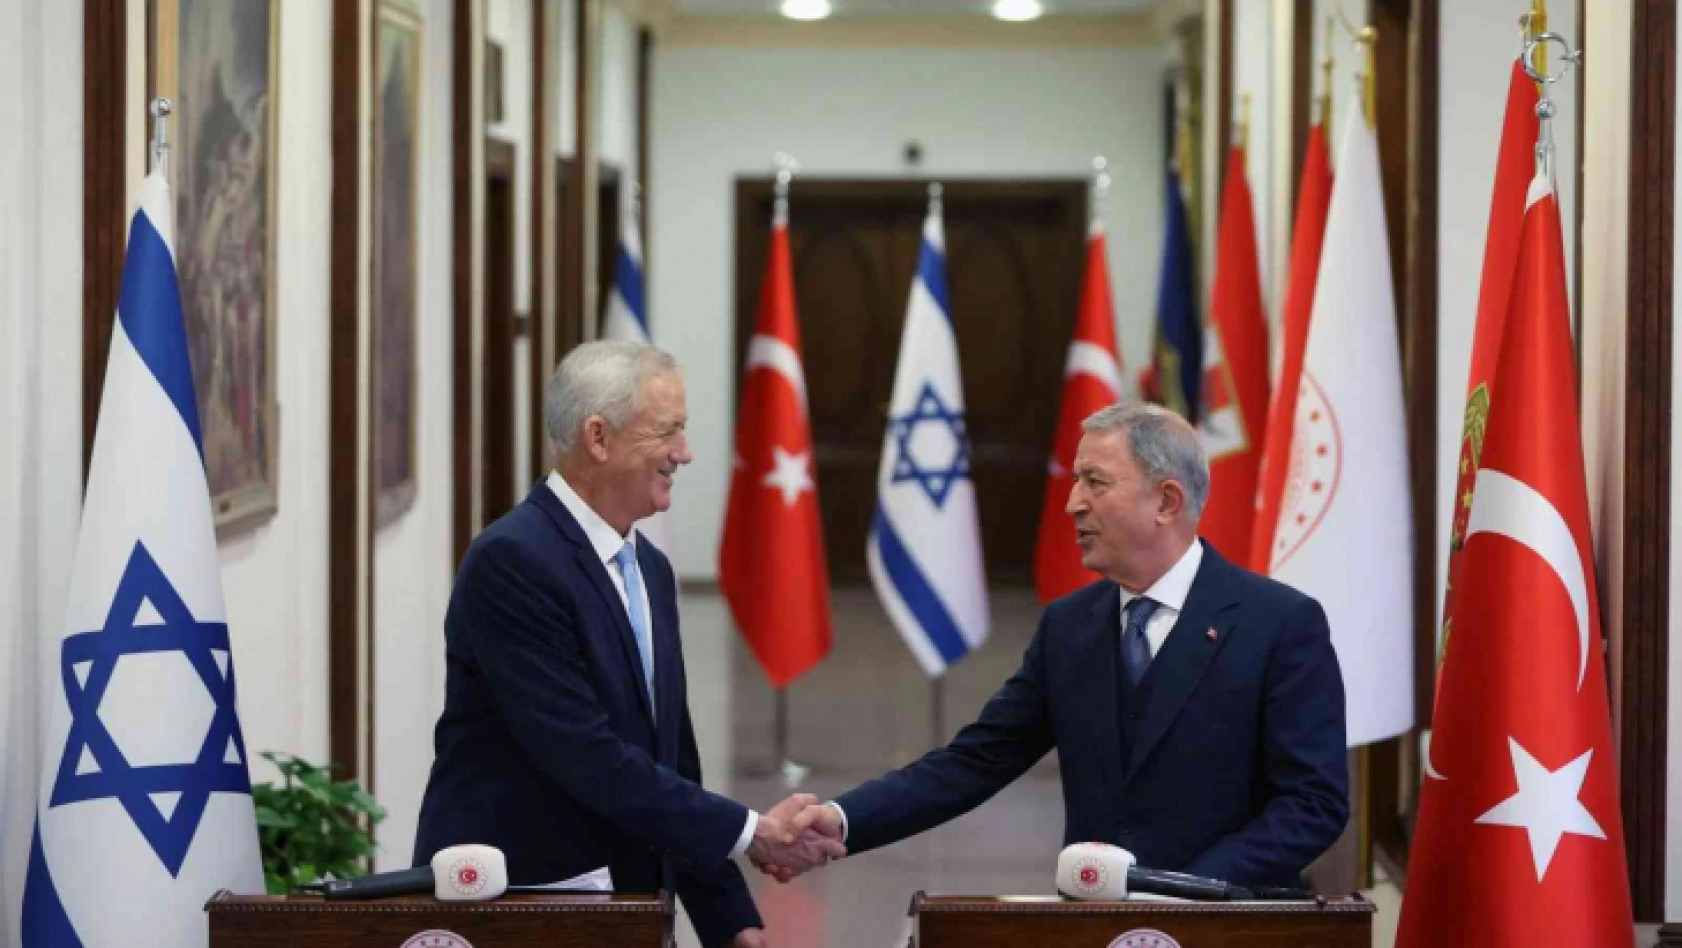 Milli Savunma Bakanı Akar ve İsrailli mevkidaşı Gantz'dan ortak basın toplantısı